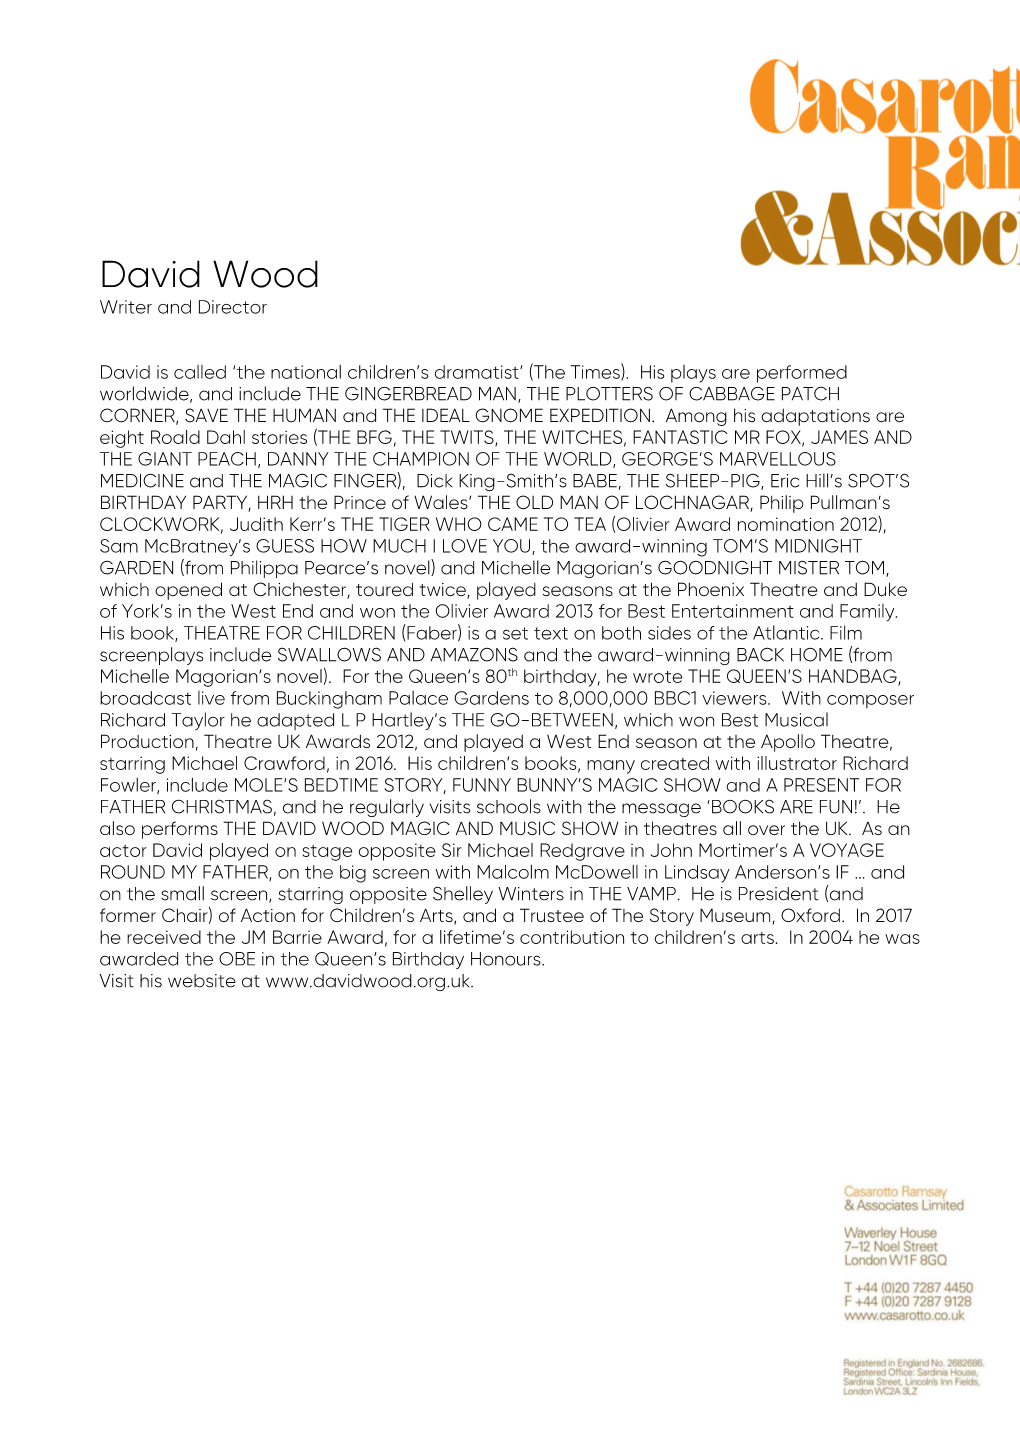 David Wood Short Bio. Headed